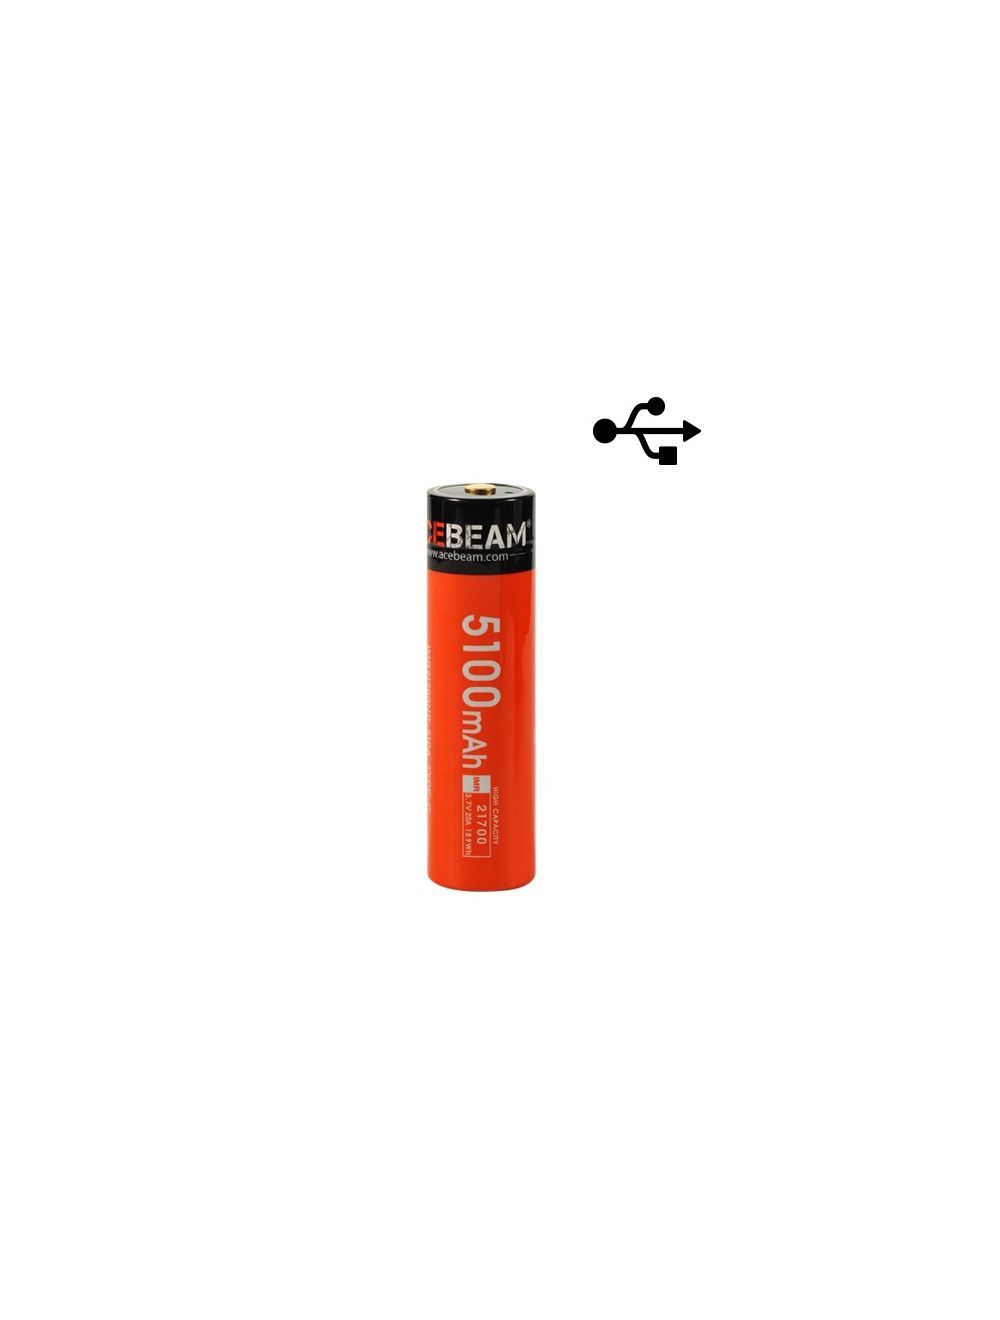 Onderscheiden Oprichter Groenteboer Acebeam 21700 Batterij Oplaadbaar USB met Oplaadkabel kopen? Zaklampen.nl